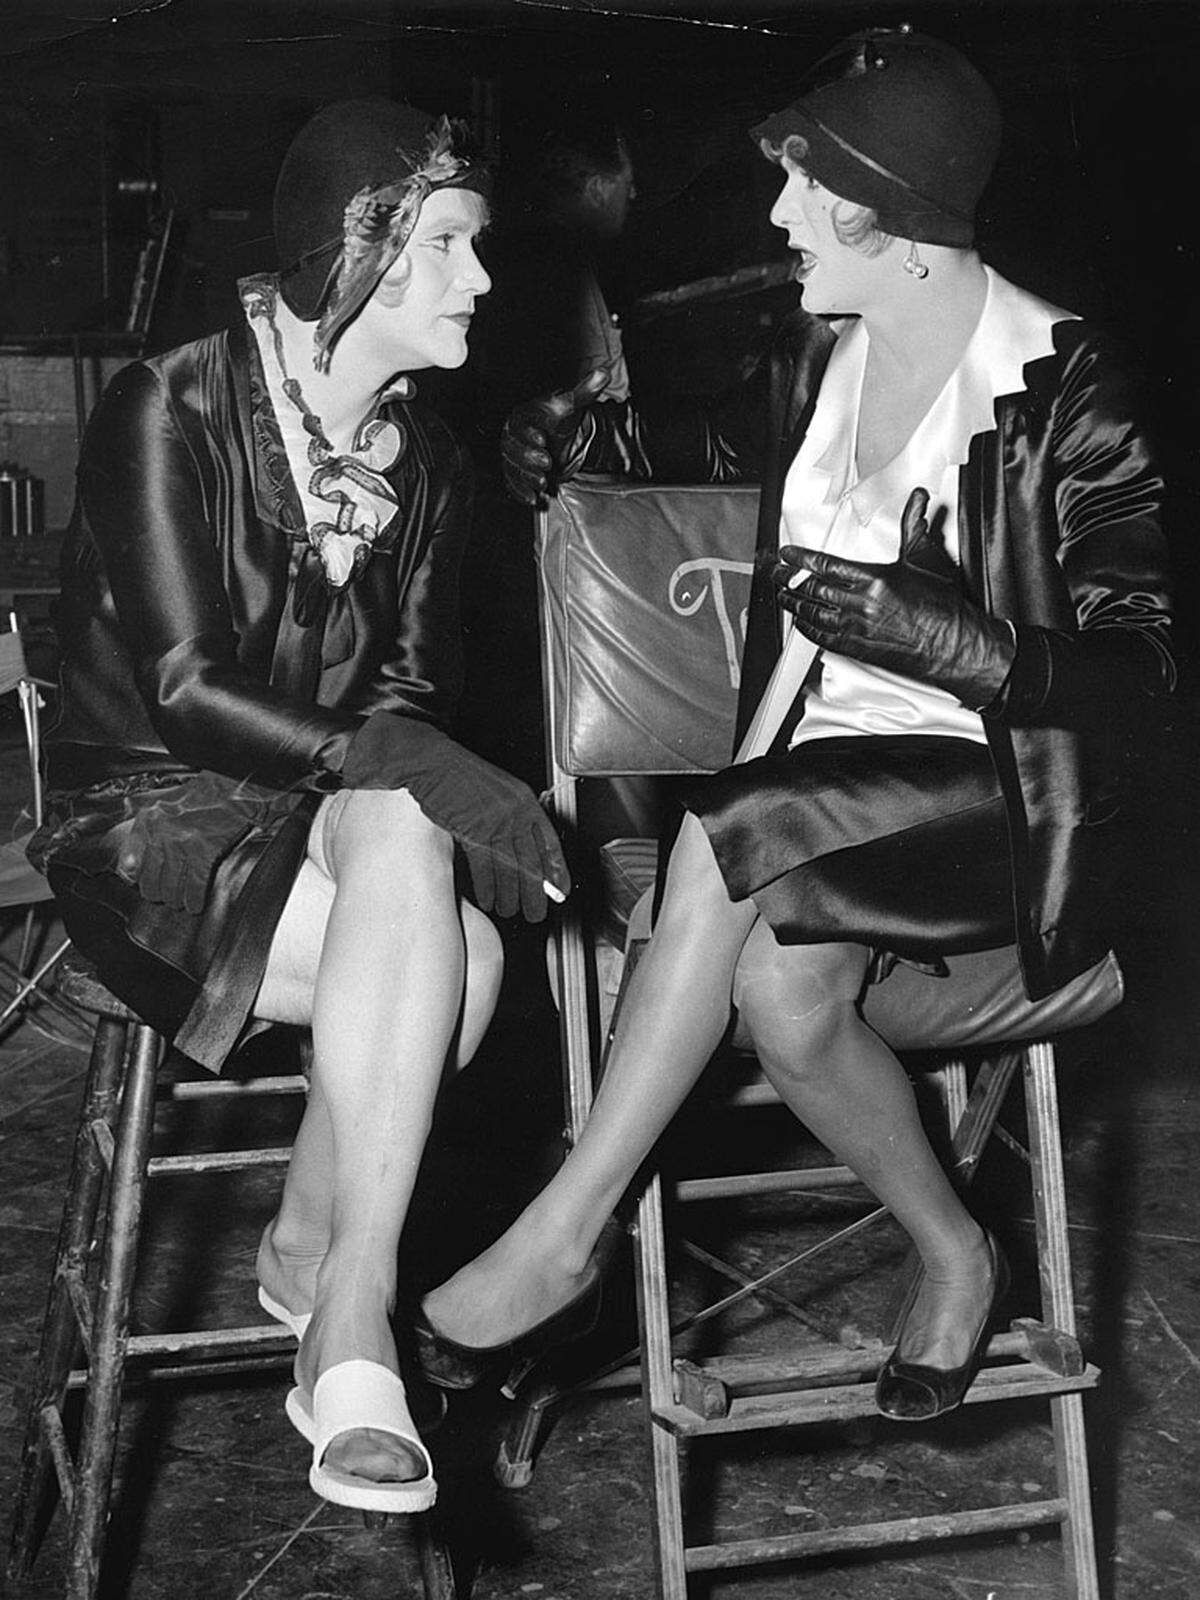 Denn Tony Curtis und Jack Lemmon heuern in Billy Wilders legendärer Komödie als Frauen verkleidet bei einer Damenkapelle an, nachdem sie zufällig einen Gangstermord beobachtet haben. So "versteckt" verlieben sich sich in die Sängerin Sugar (Marilyn Monroe). Mit Monroe verband Curtis nicht nur Berufliches.